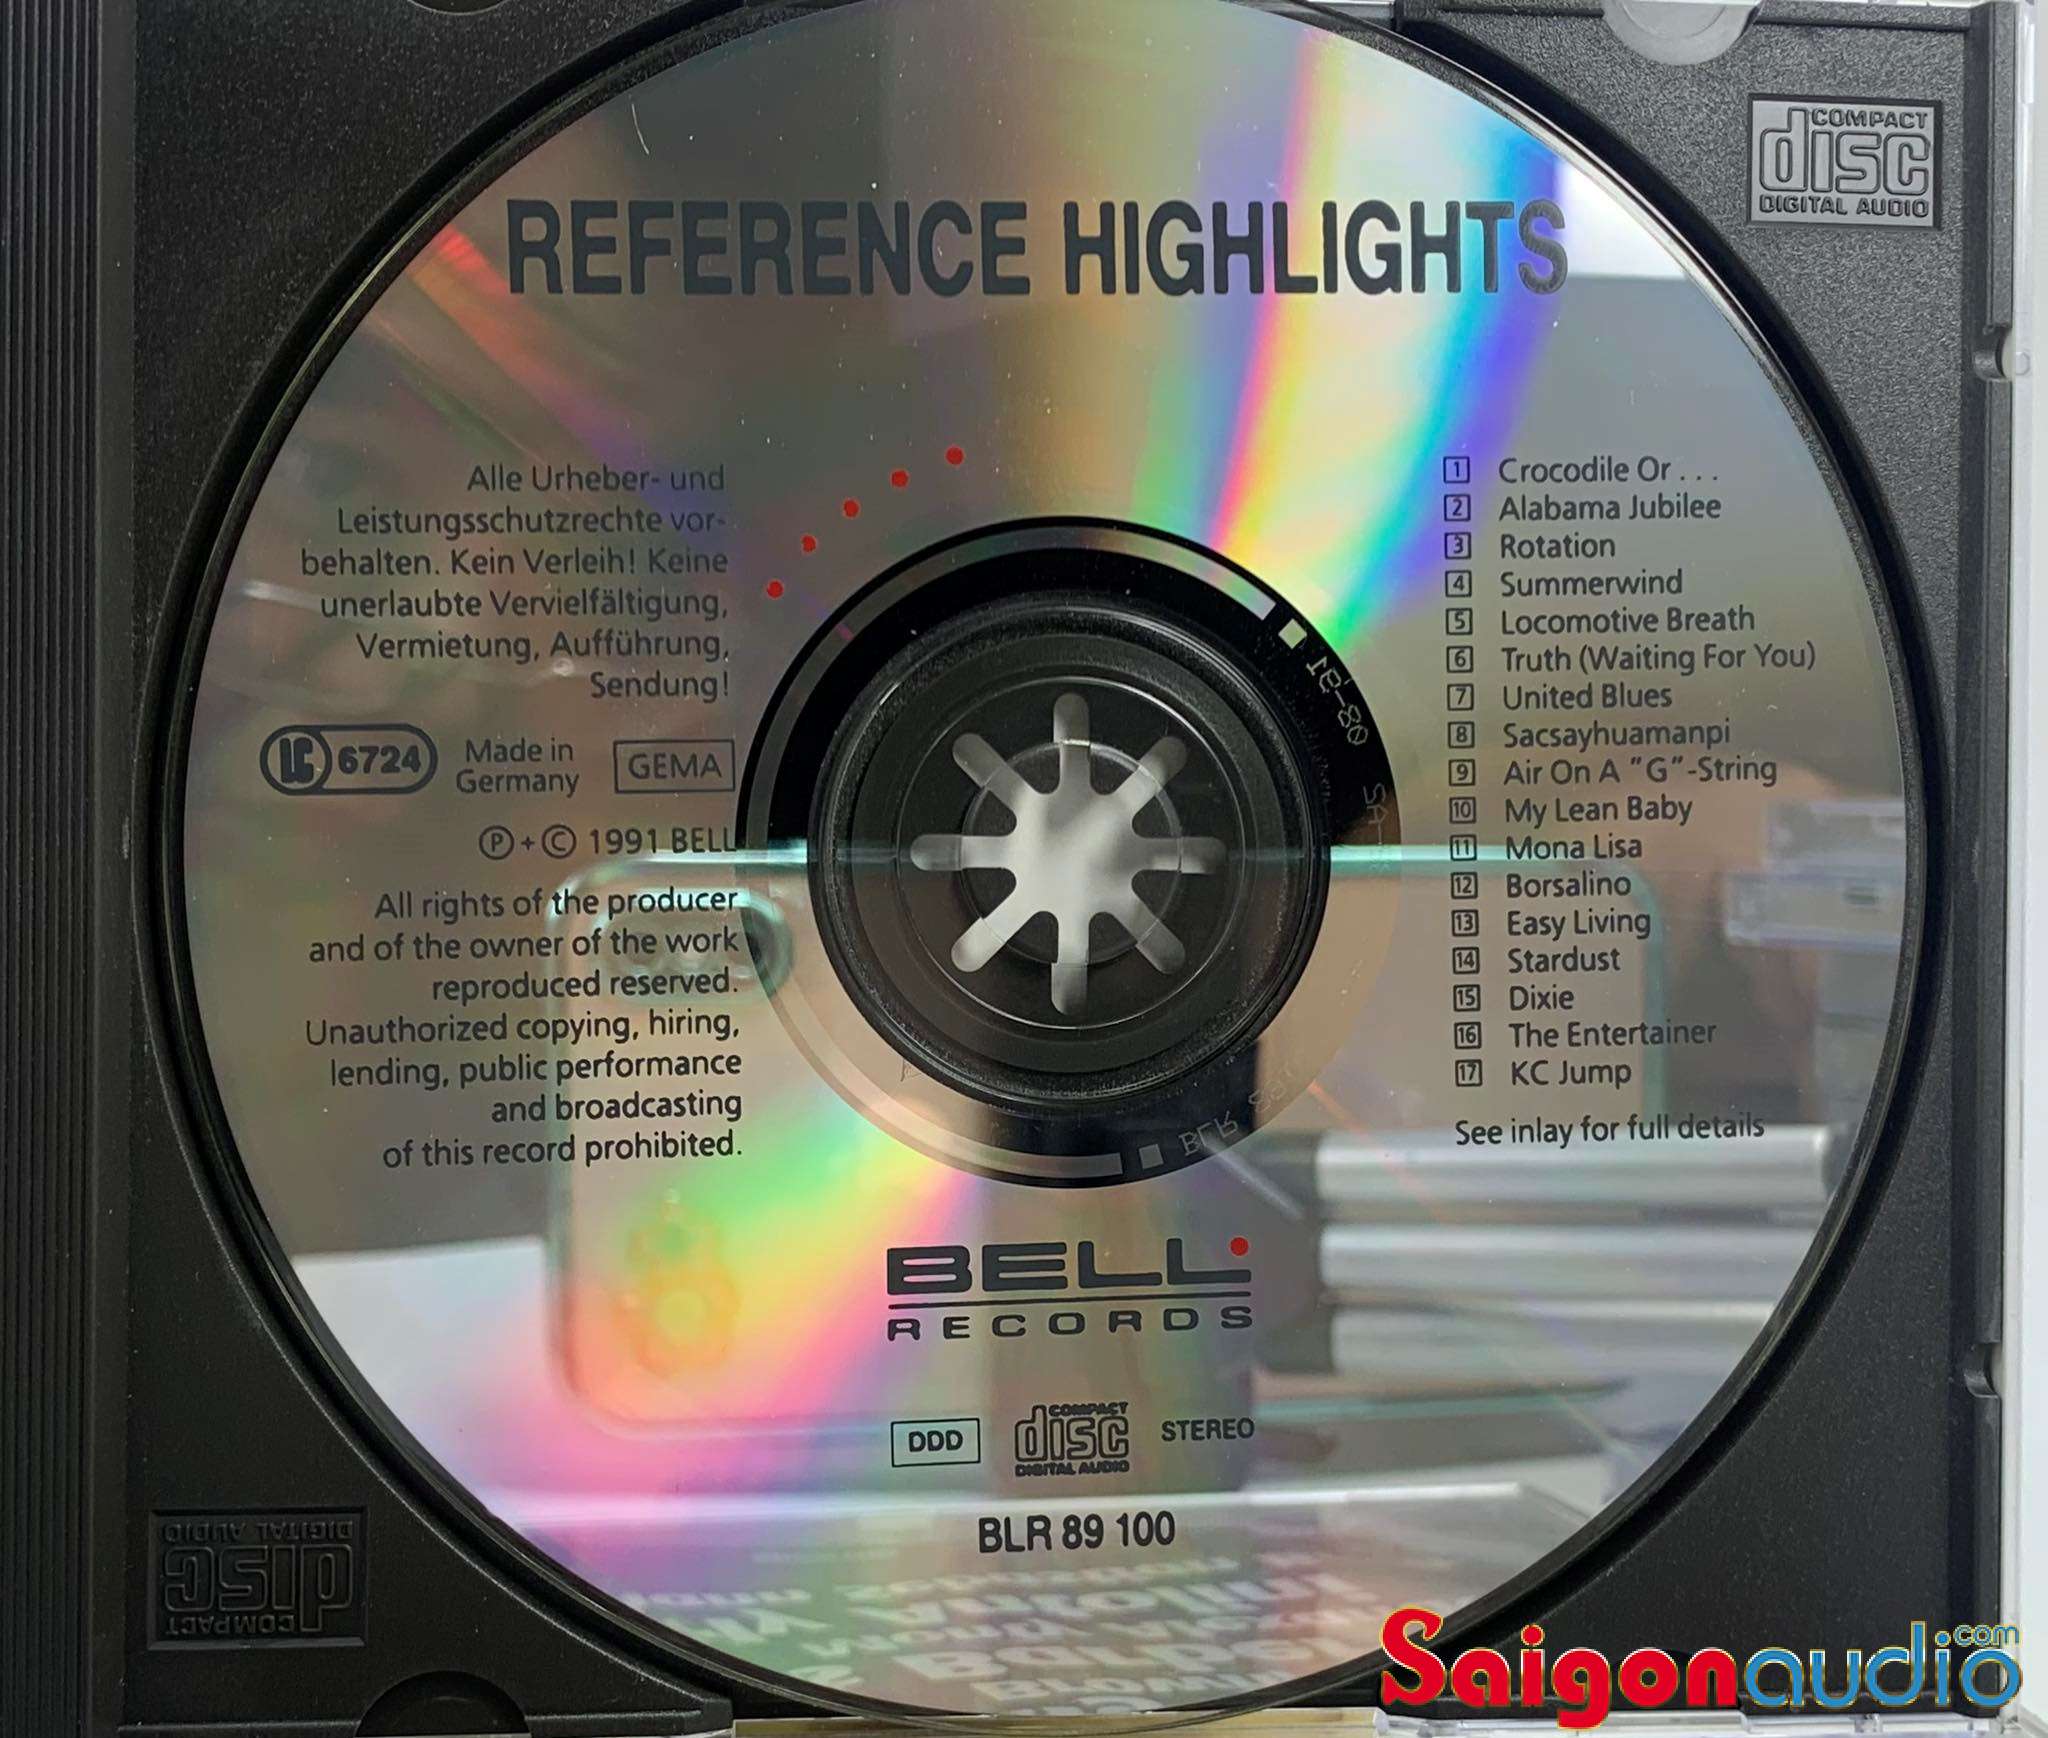 Đĩa CD nhạc gốc Platinum Pop - Harman Kardon Power for the Digital Revolution (Free ship khi mua 2 đĩa CD cùng hoặc khác loại)